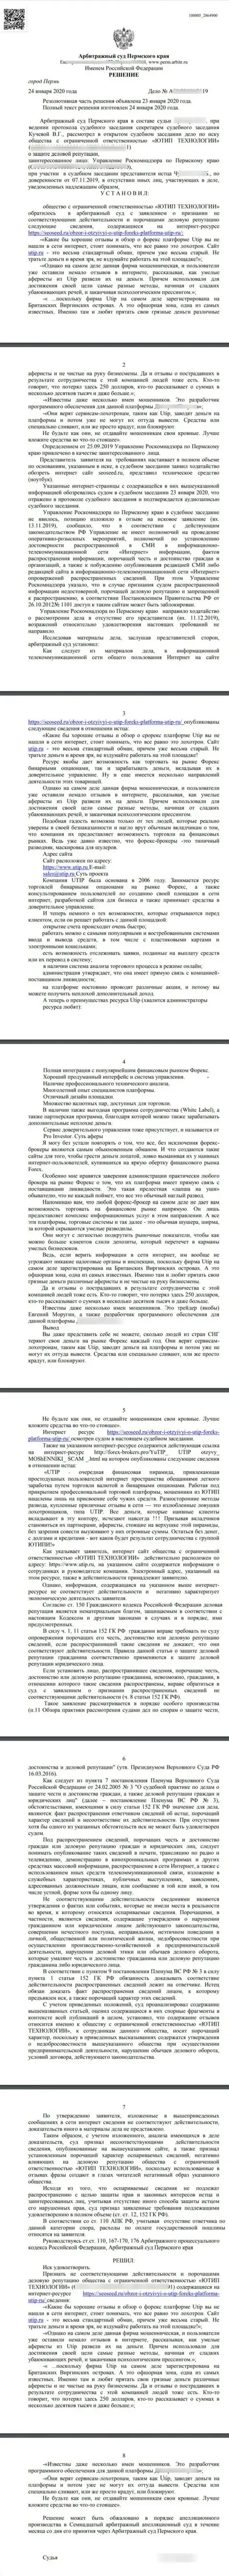 Судебный иск мошенников UTIP Org в адрес сайта seoseed ru, удовлетворенный самым гуманным судом в мире